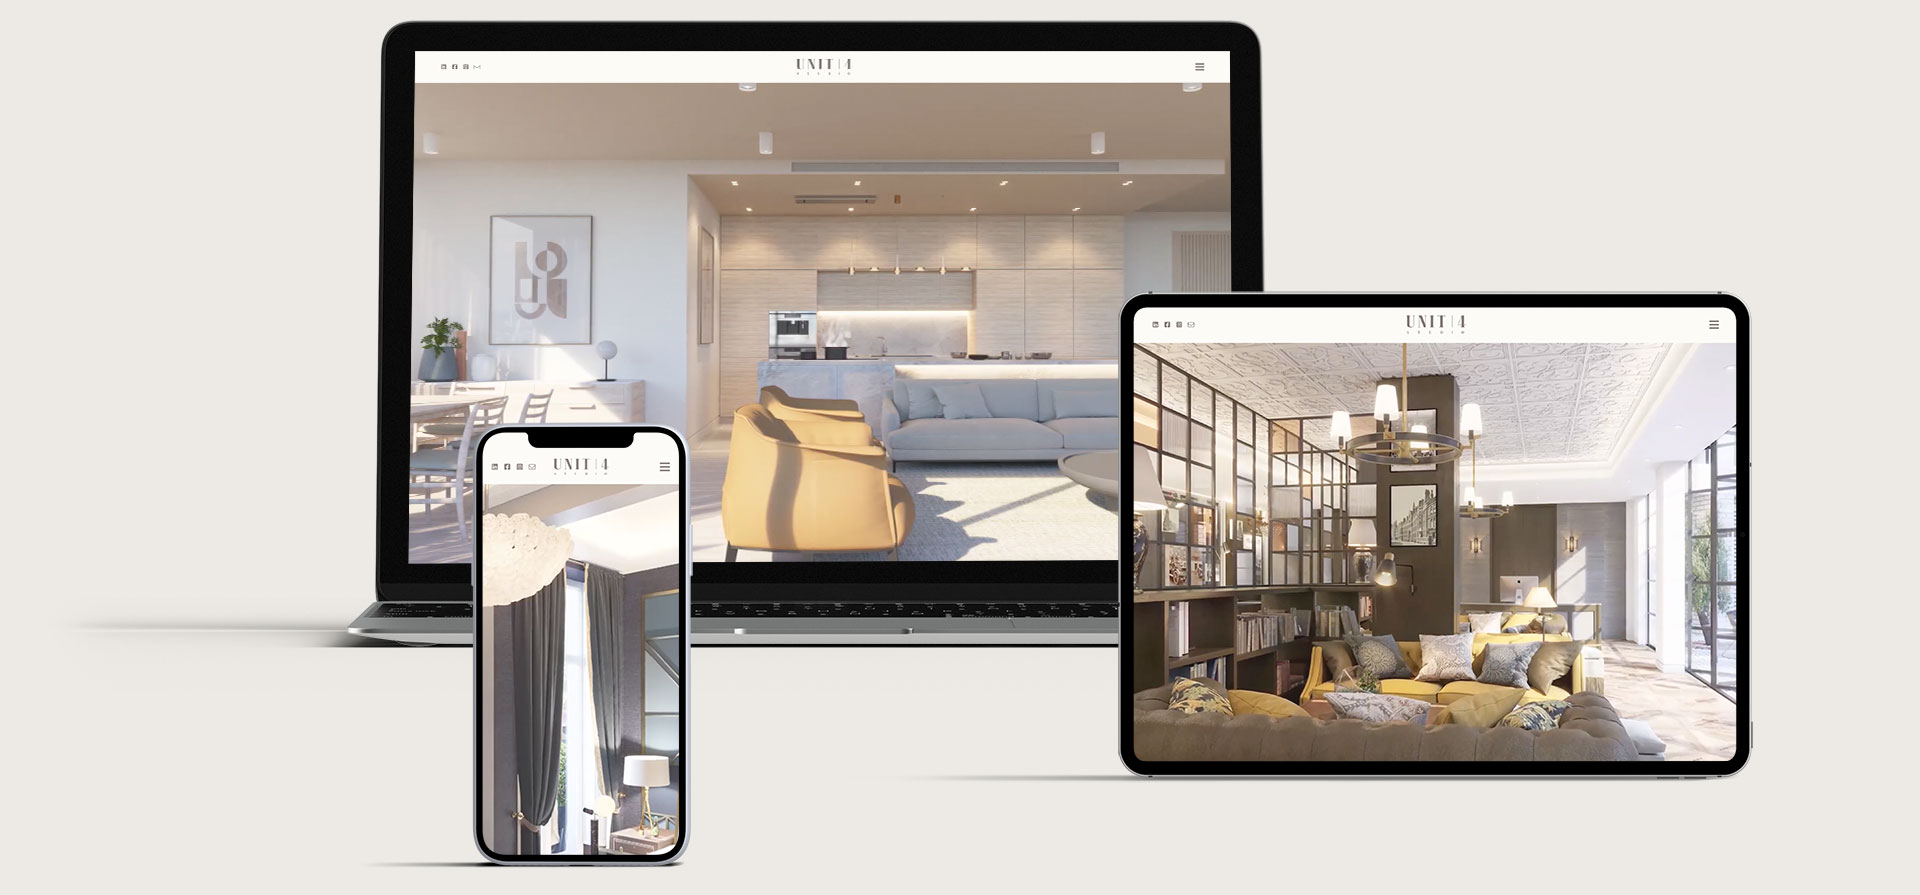 Unit4 website design CGI London architects web design interior designer website